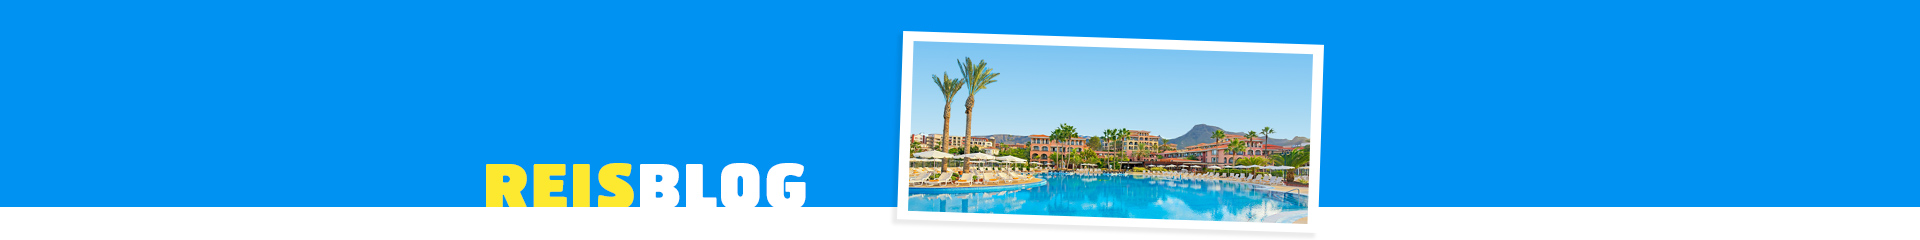 Uitzicht op het blauwe zwembad bij een hotel op de Canarische Eilanden